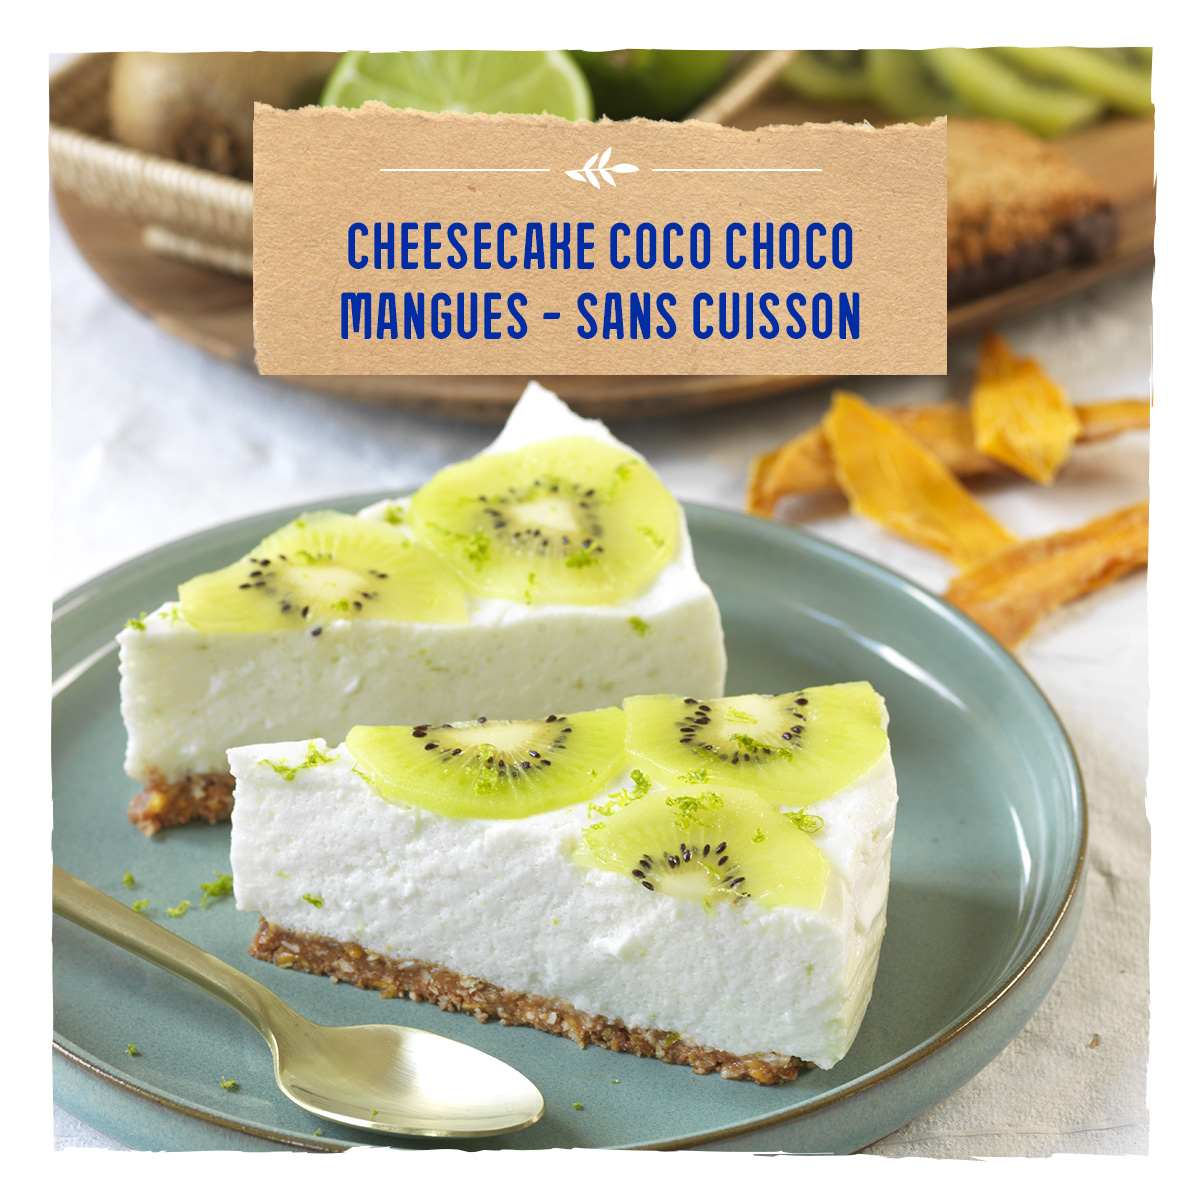 Cheesecake coco choco mangues - sans cuisson